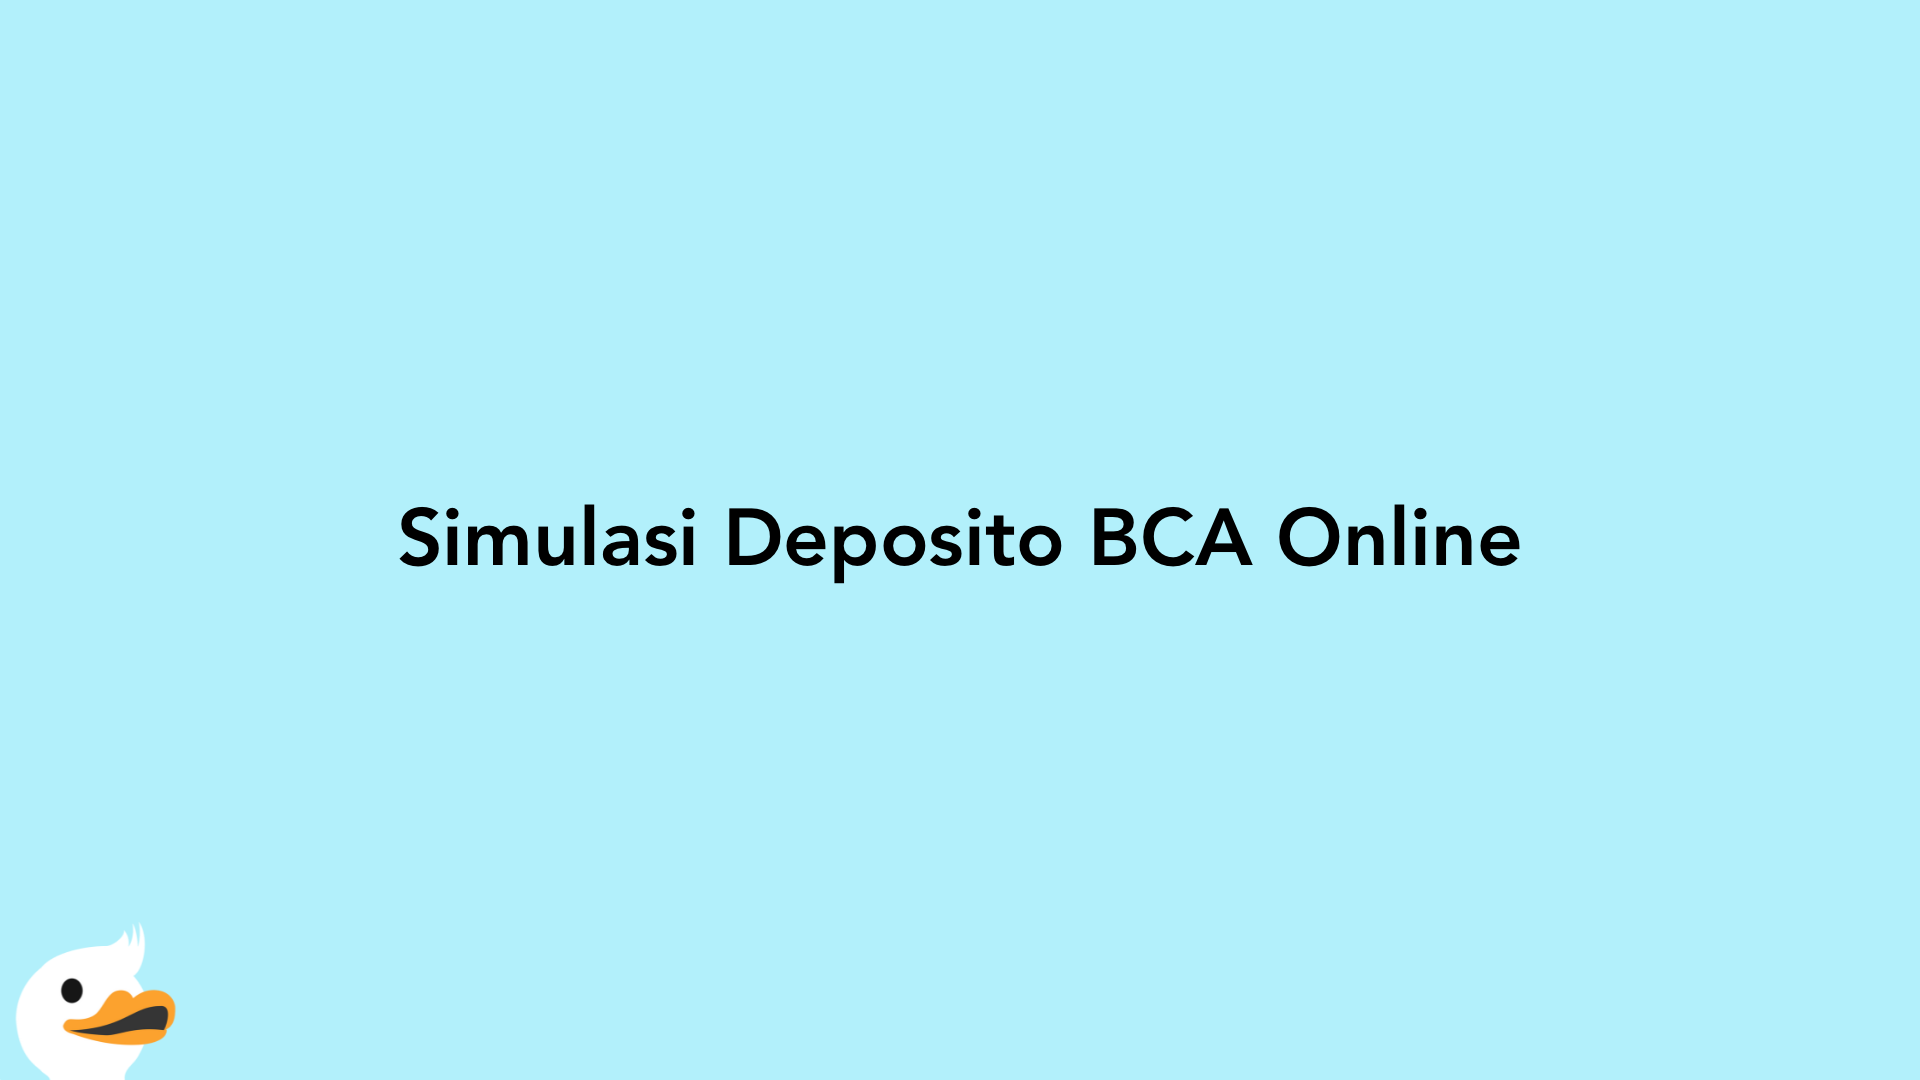 Simulasi Deposito BCA Online